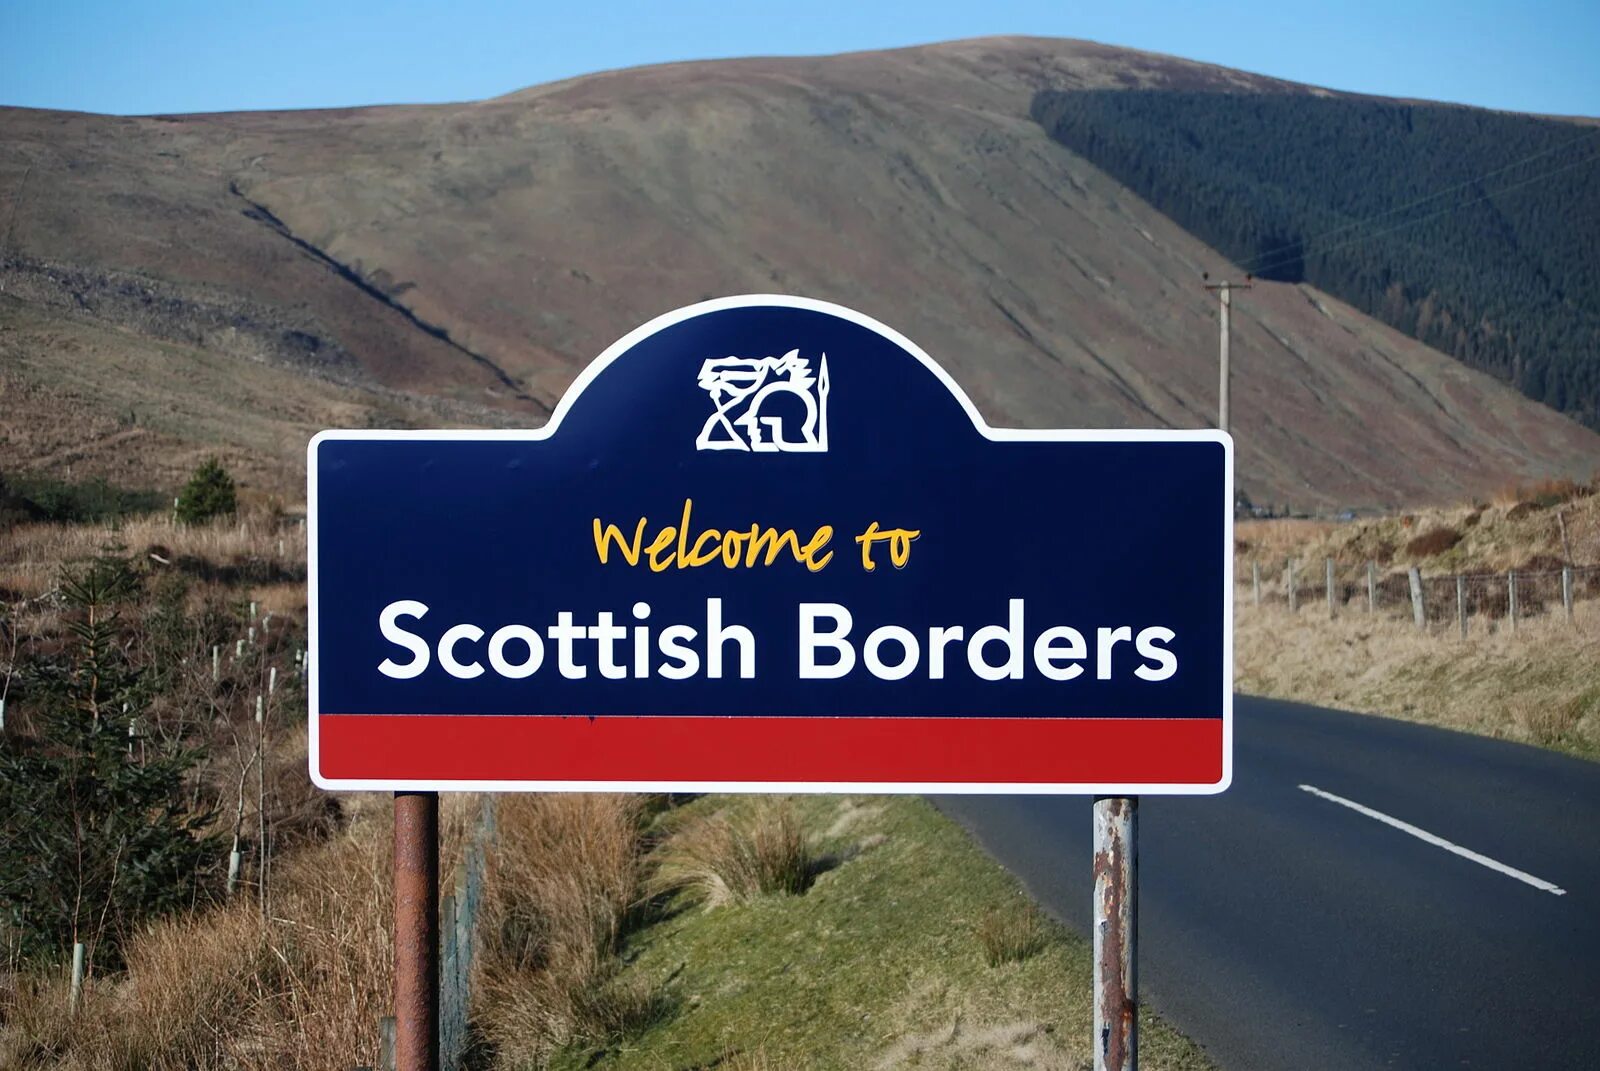 Шотландский диалект английского языка. Scottish borders. Scottish Accent. The Scottish borders Scotland. Border region